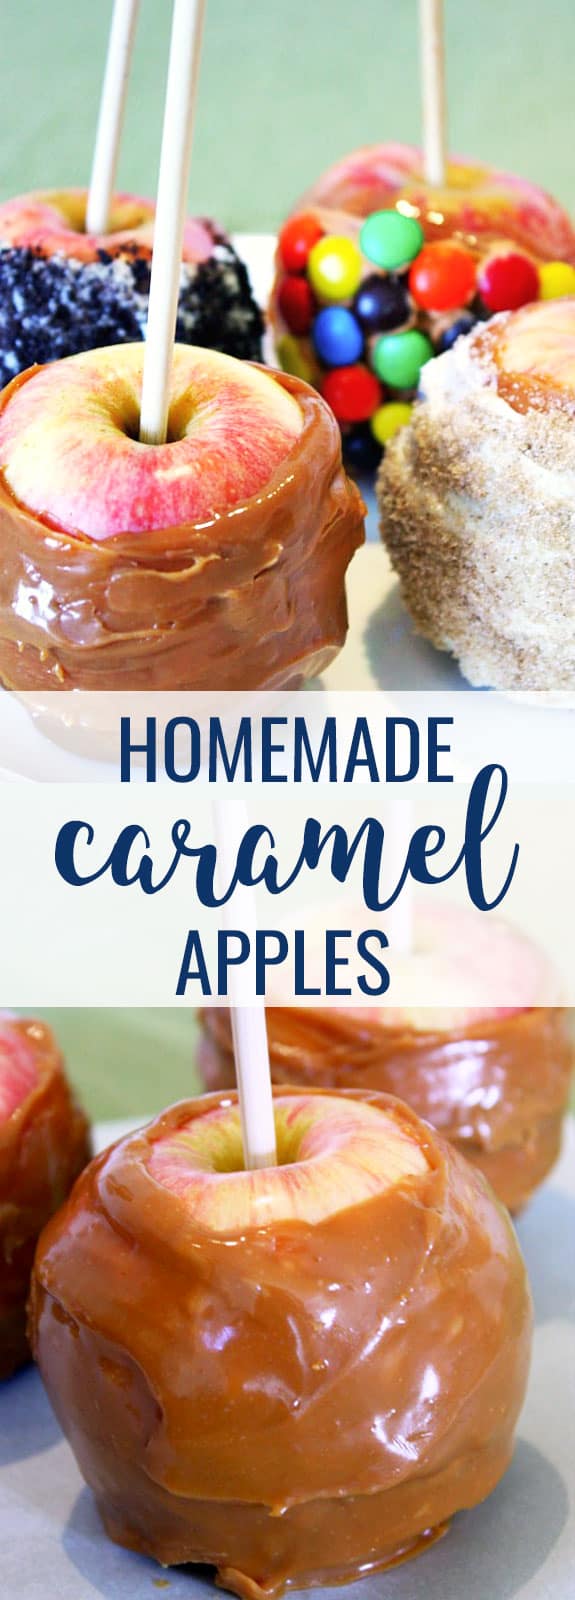 Homemade Caramel Apples Recipe